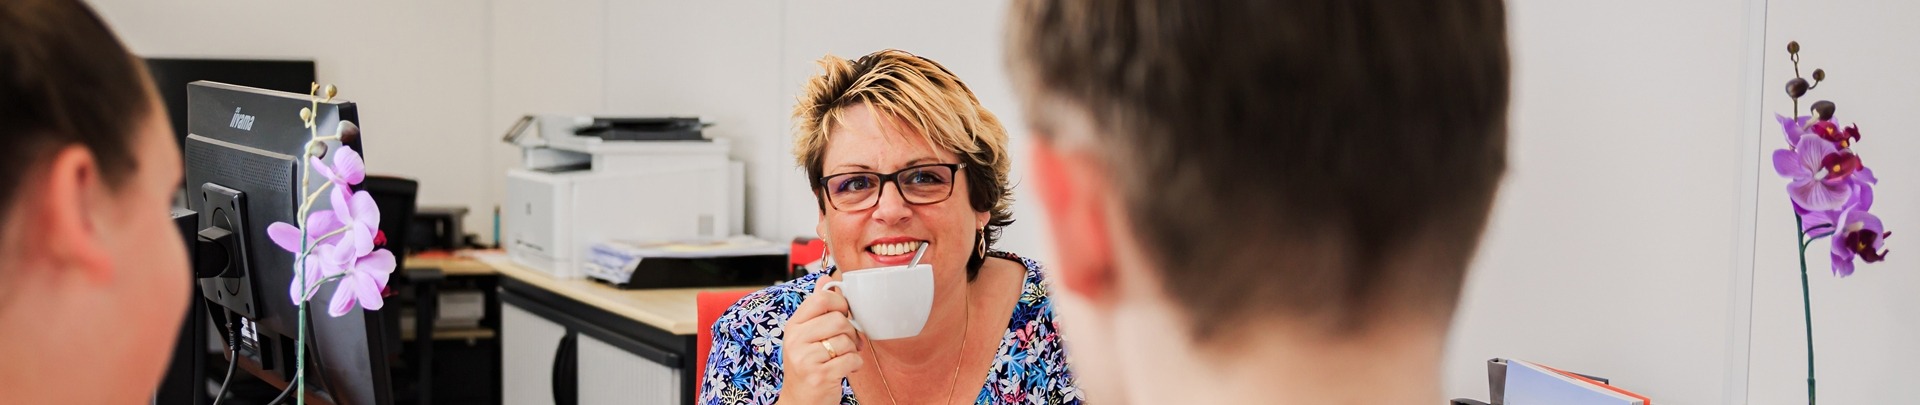 Cynthia van der Plas in gesprek met klanten onder het genot van een kop koffie